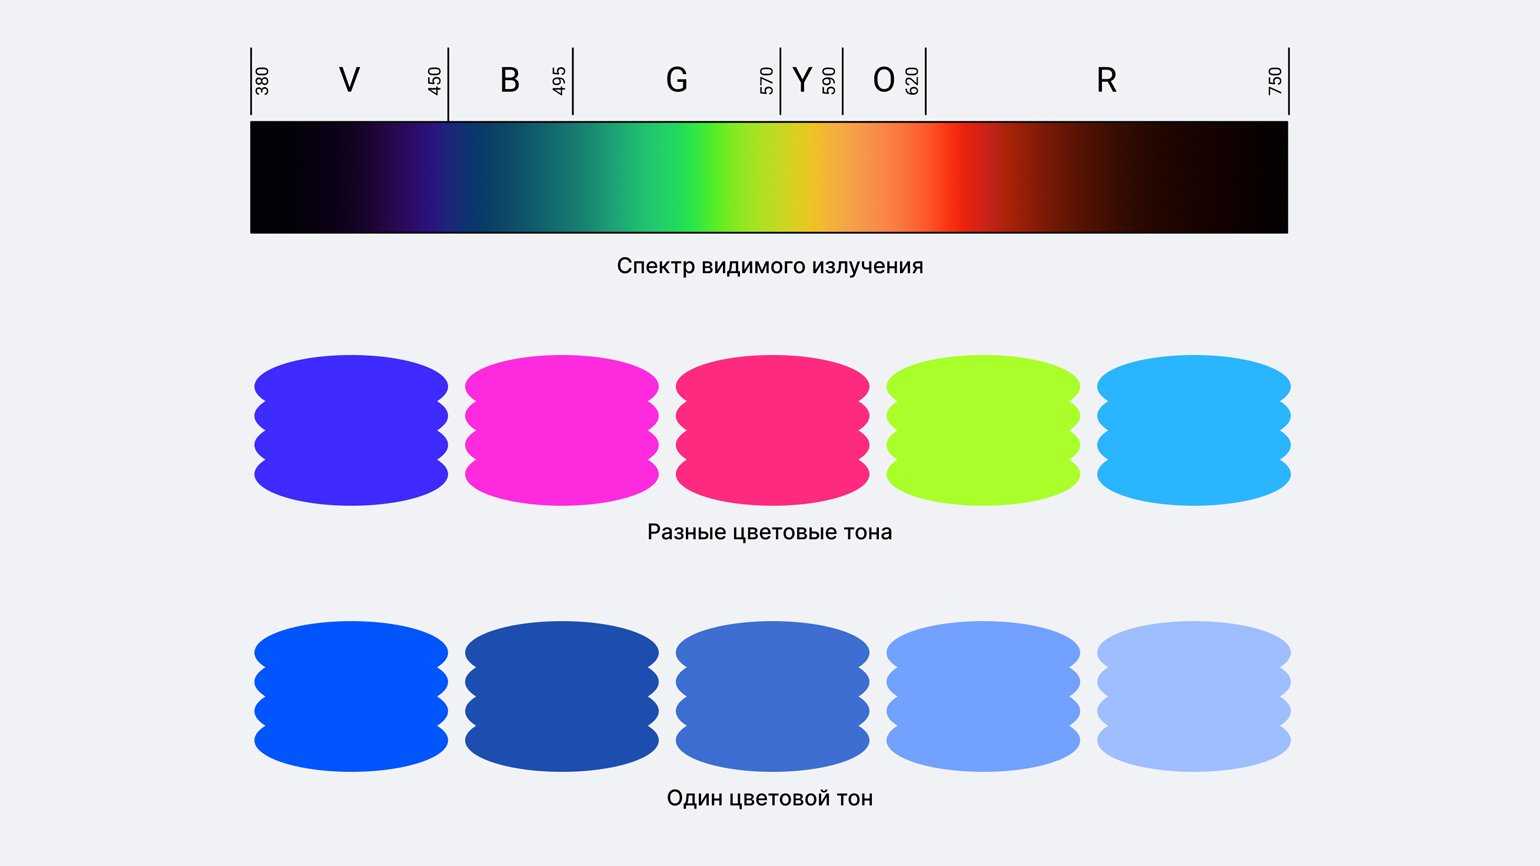 Цветовые модели, используемые в печати и графике